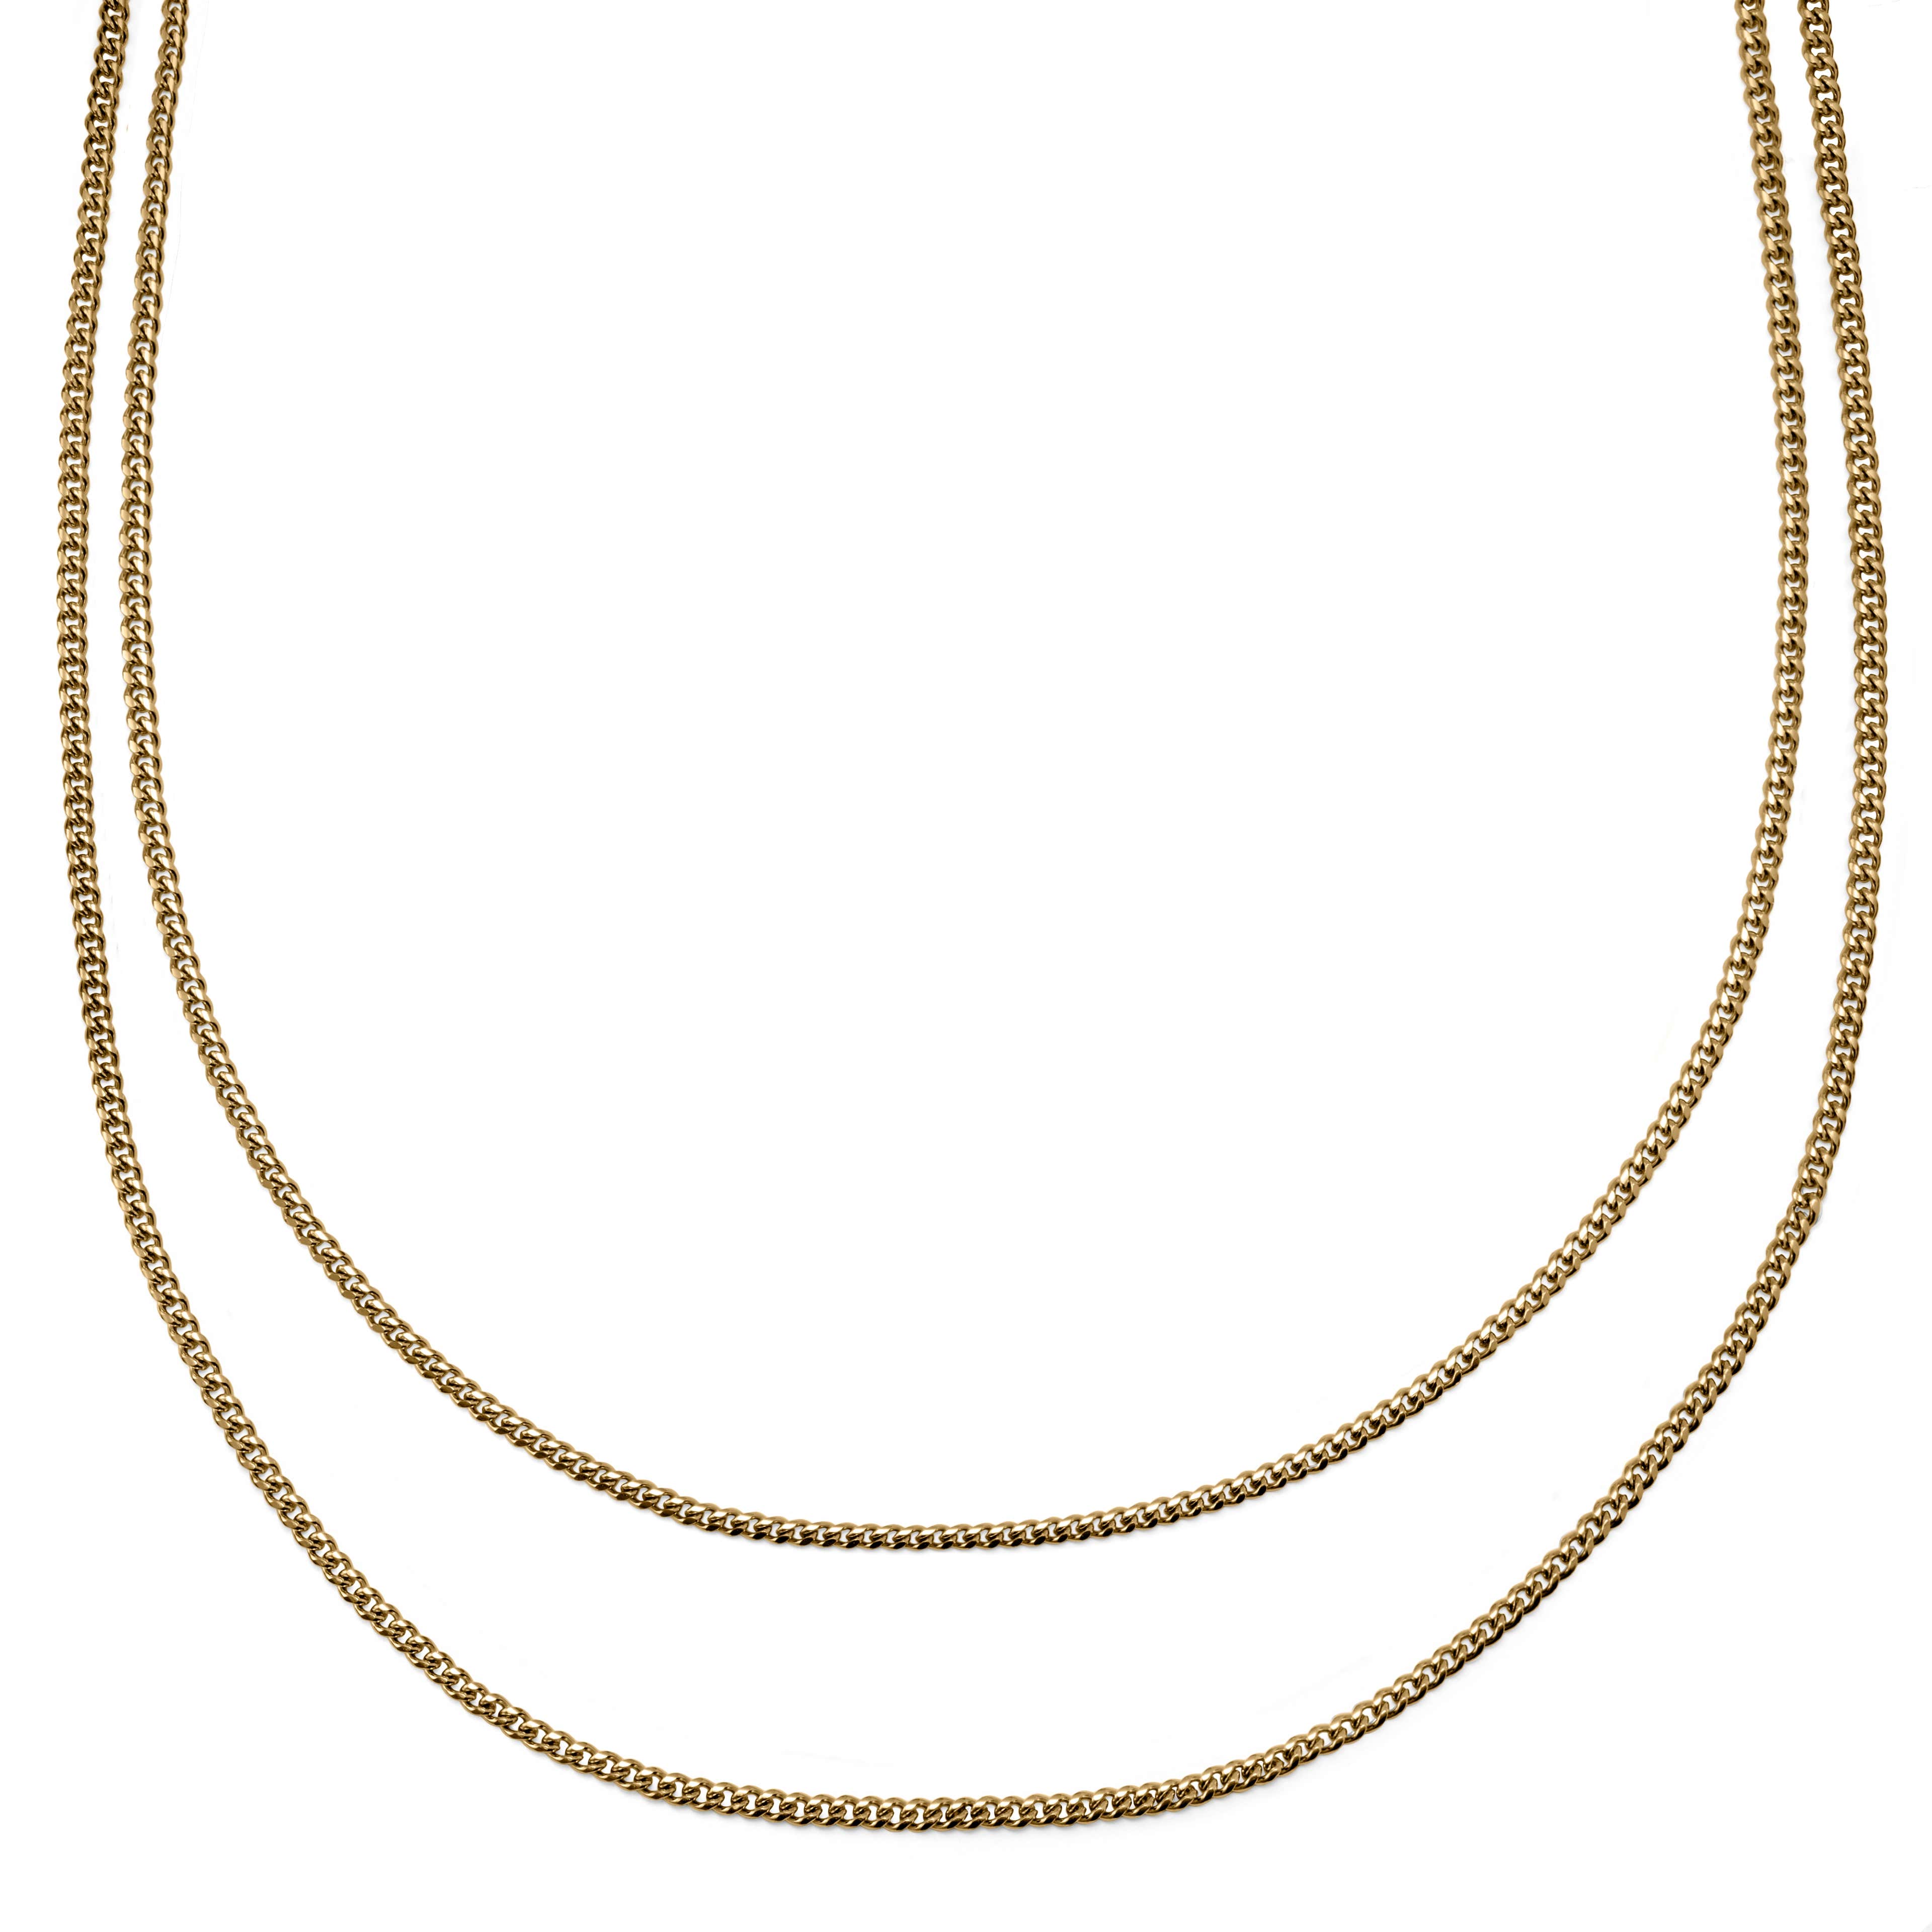 Rico dvojitý řetízkový náhrdelník zlaté barvy